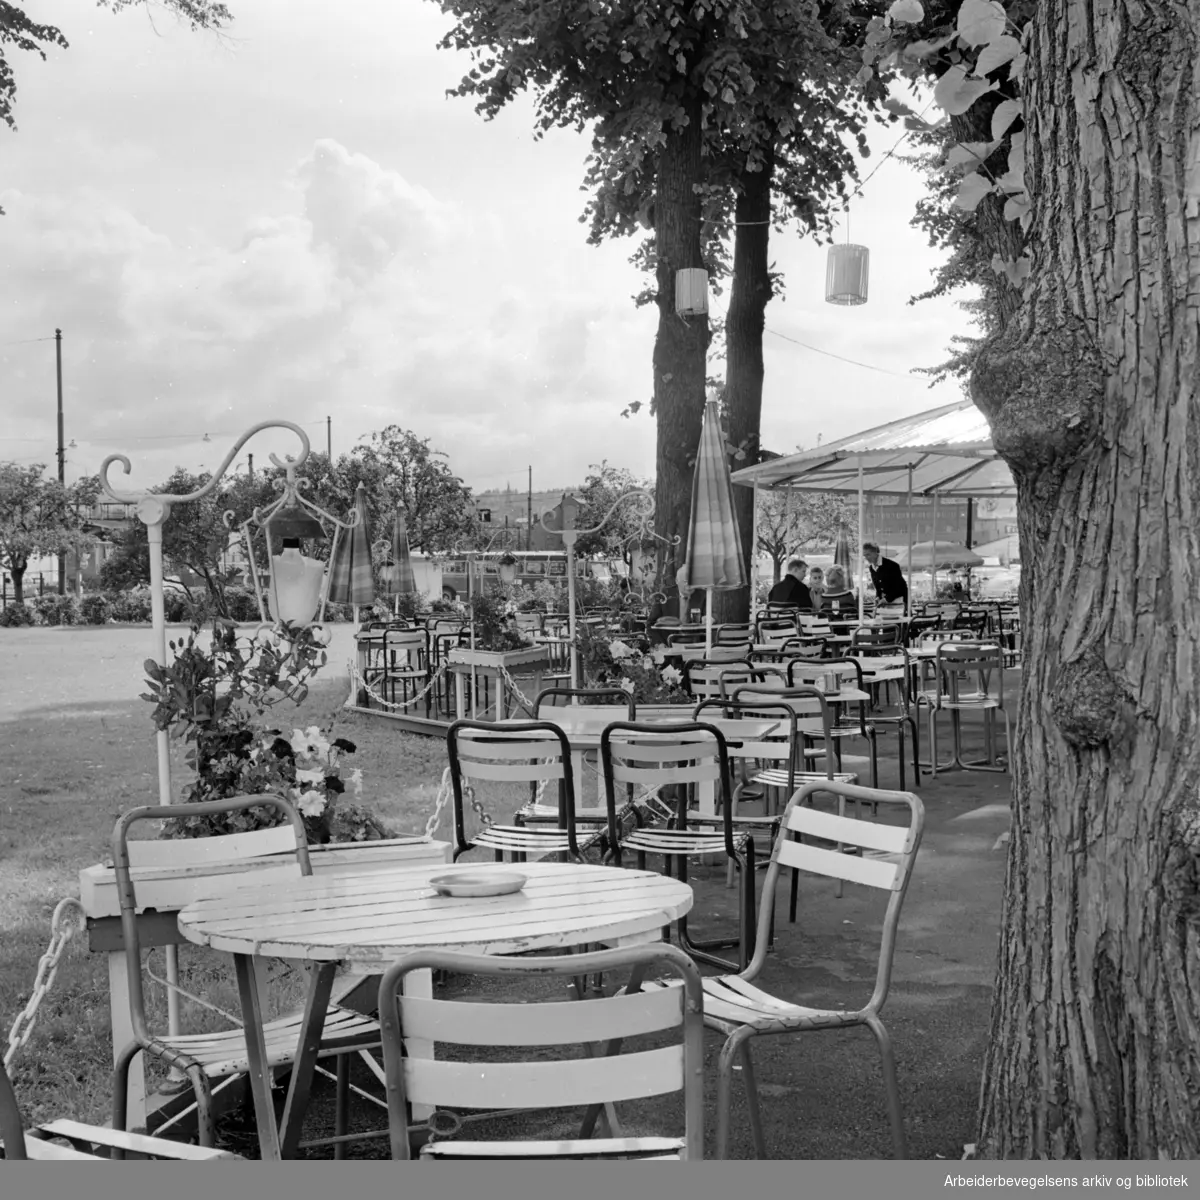 Paléhaven friluftsrestaurant. Juli 1962